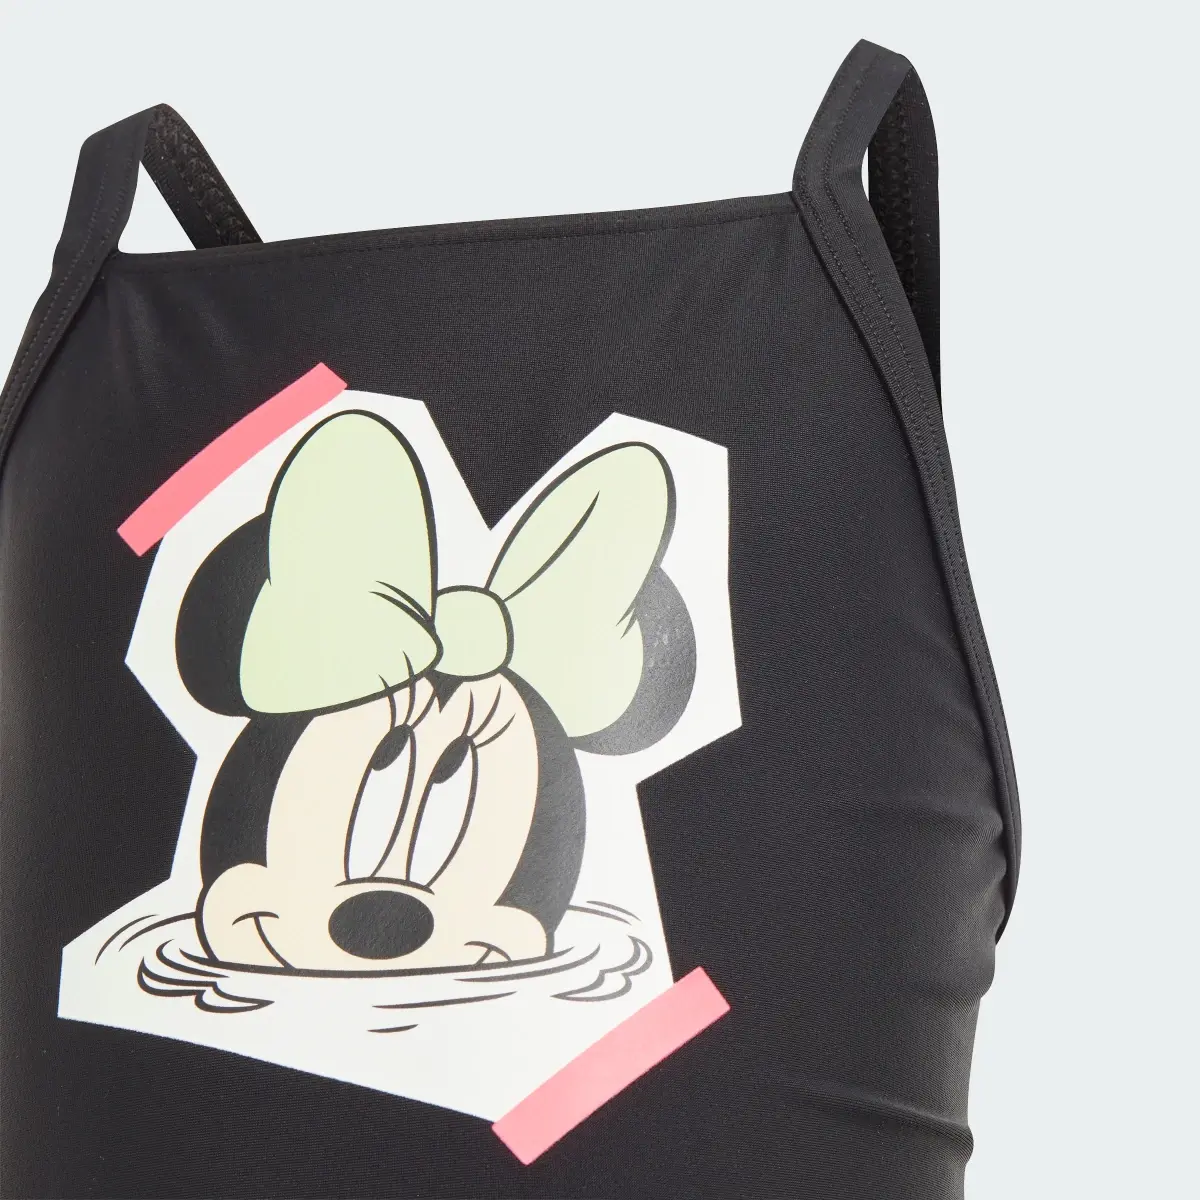 Adidas Strój do pływania adidas x Disney Minnie Mouse. 3